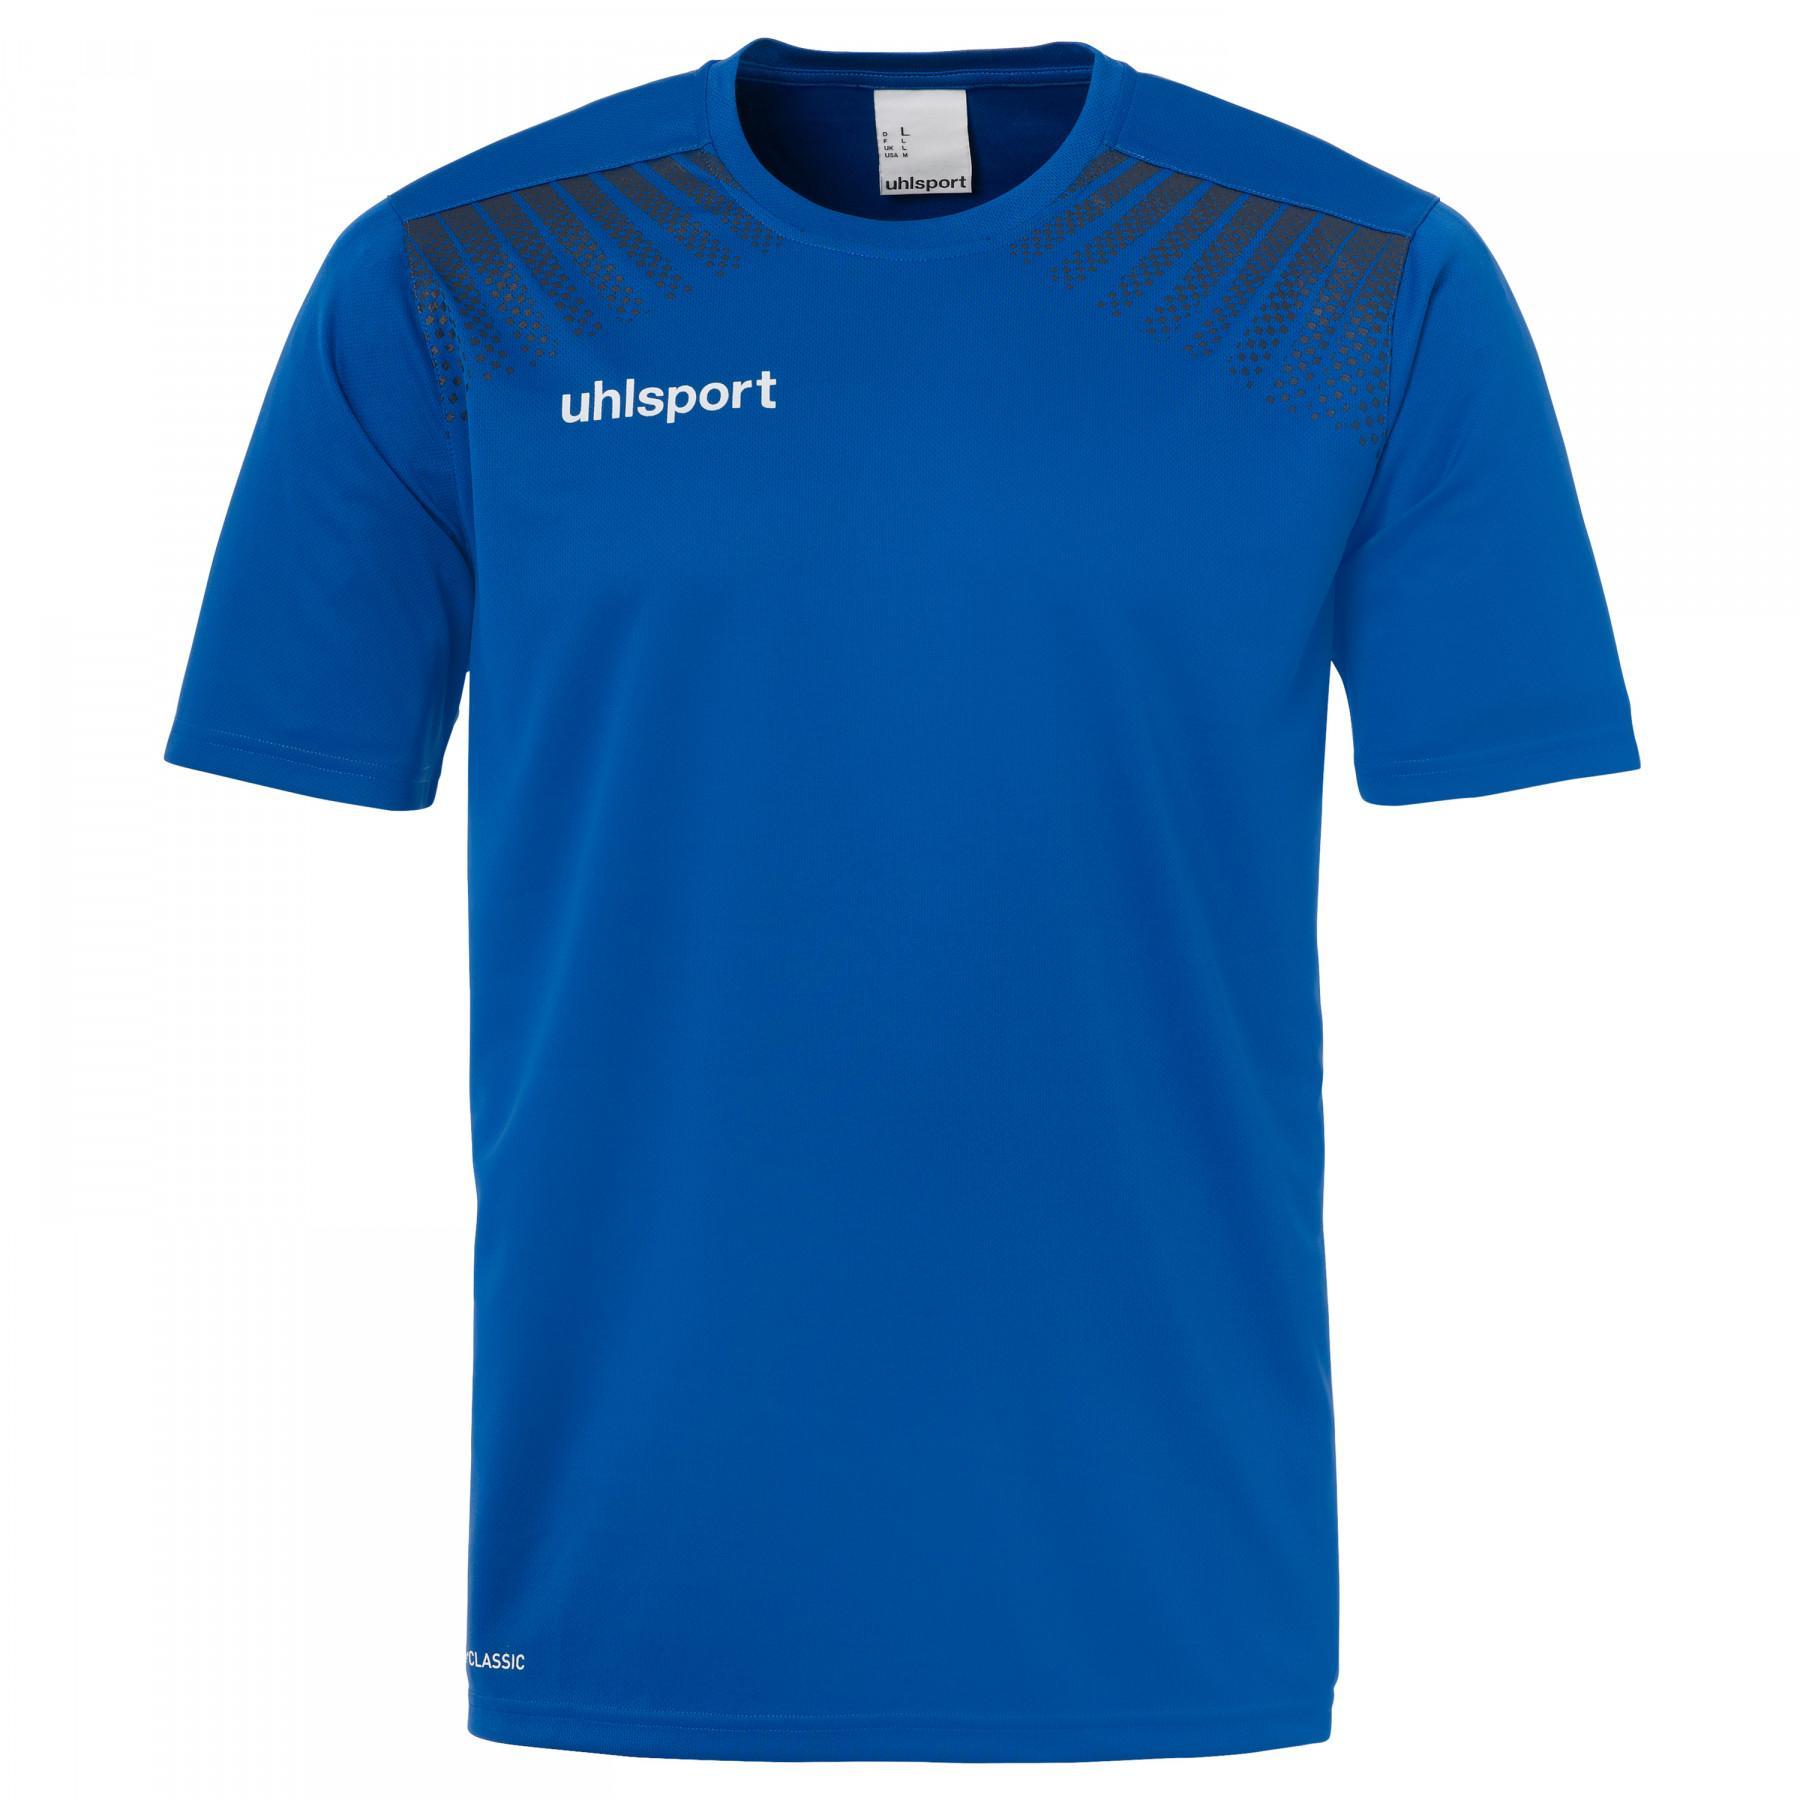 T-shirt criança Uhlsport Goal